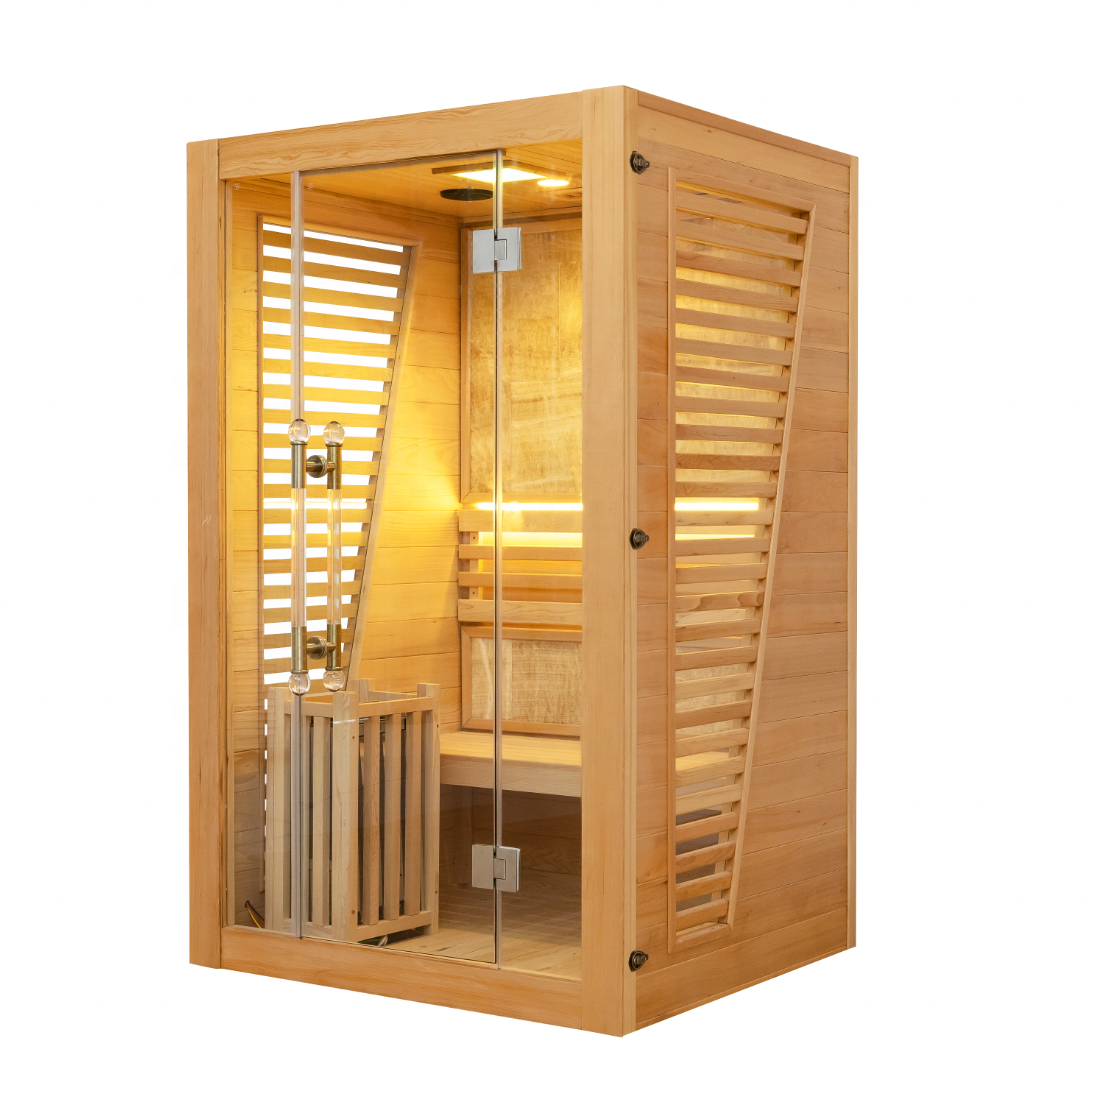 SAUNASNET® Commercial Red Cedar Hemlock Indoor Steam Sauna Room Glass 01